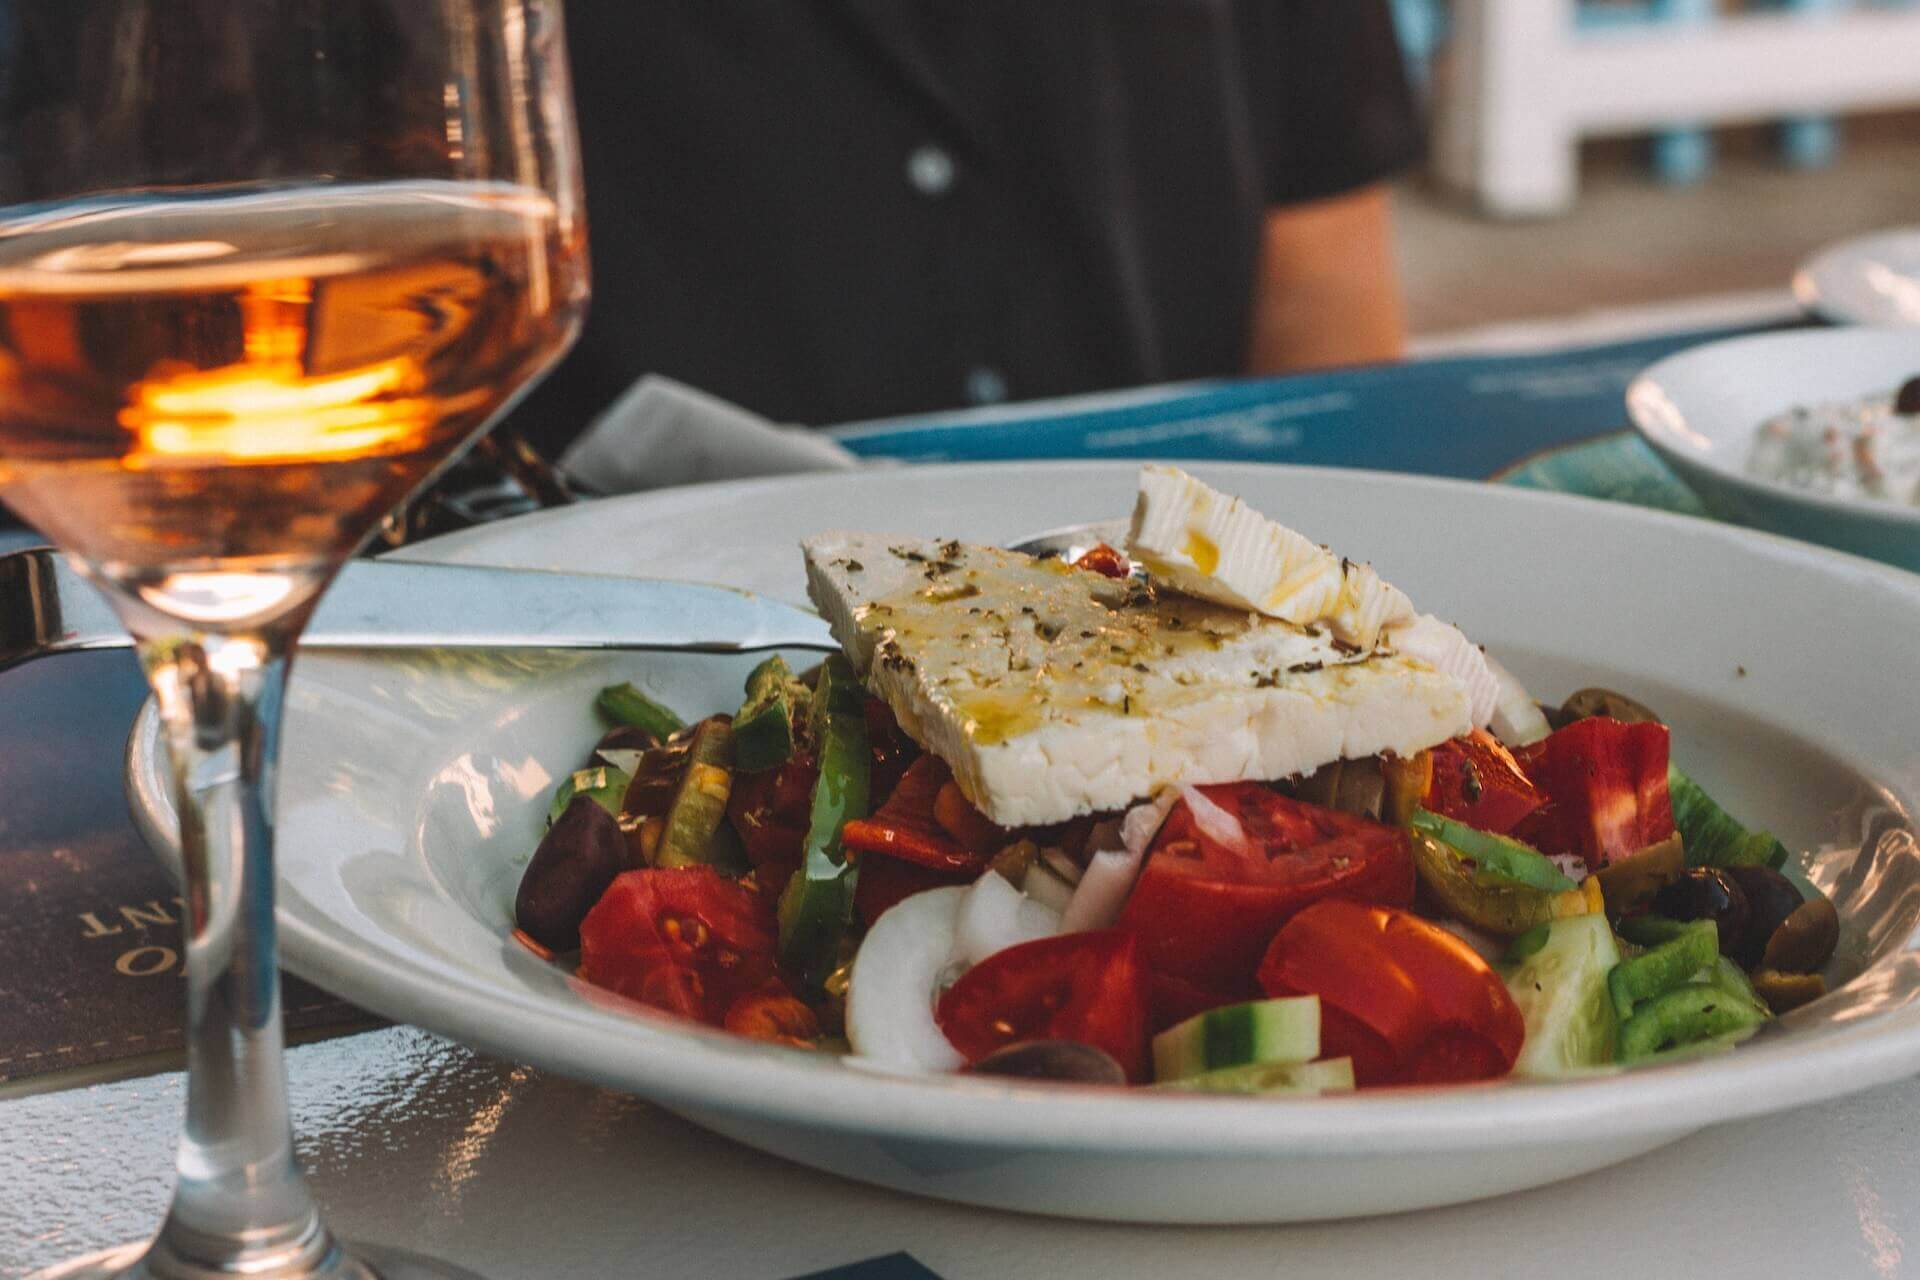 A Greek salad